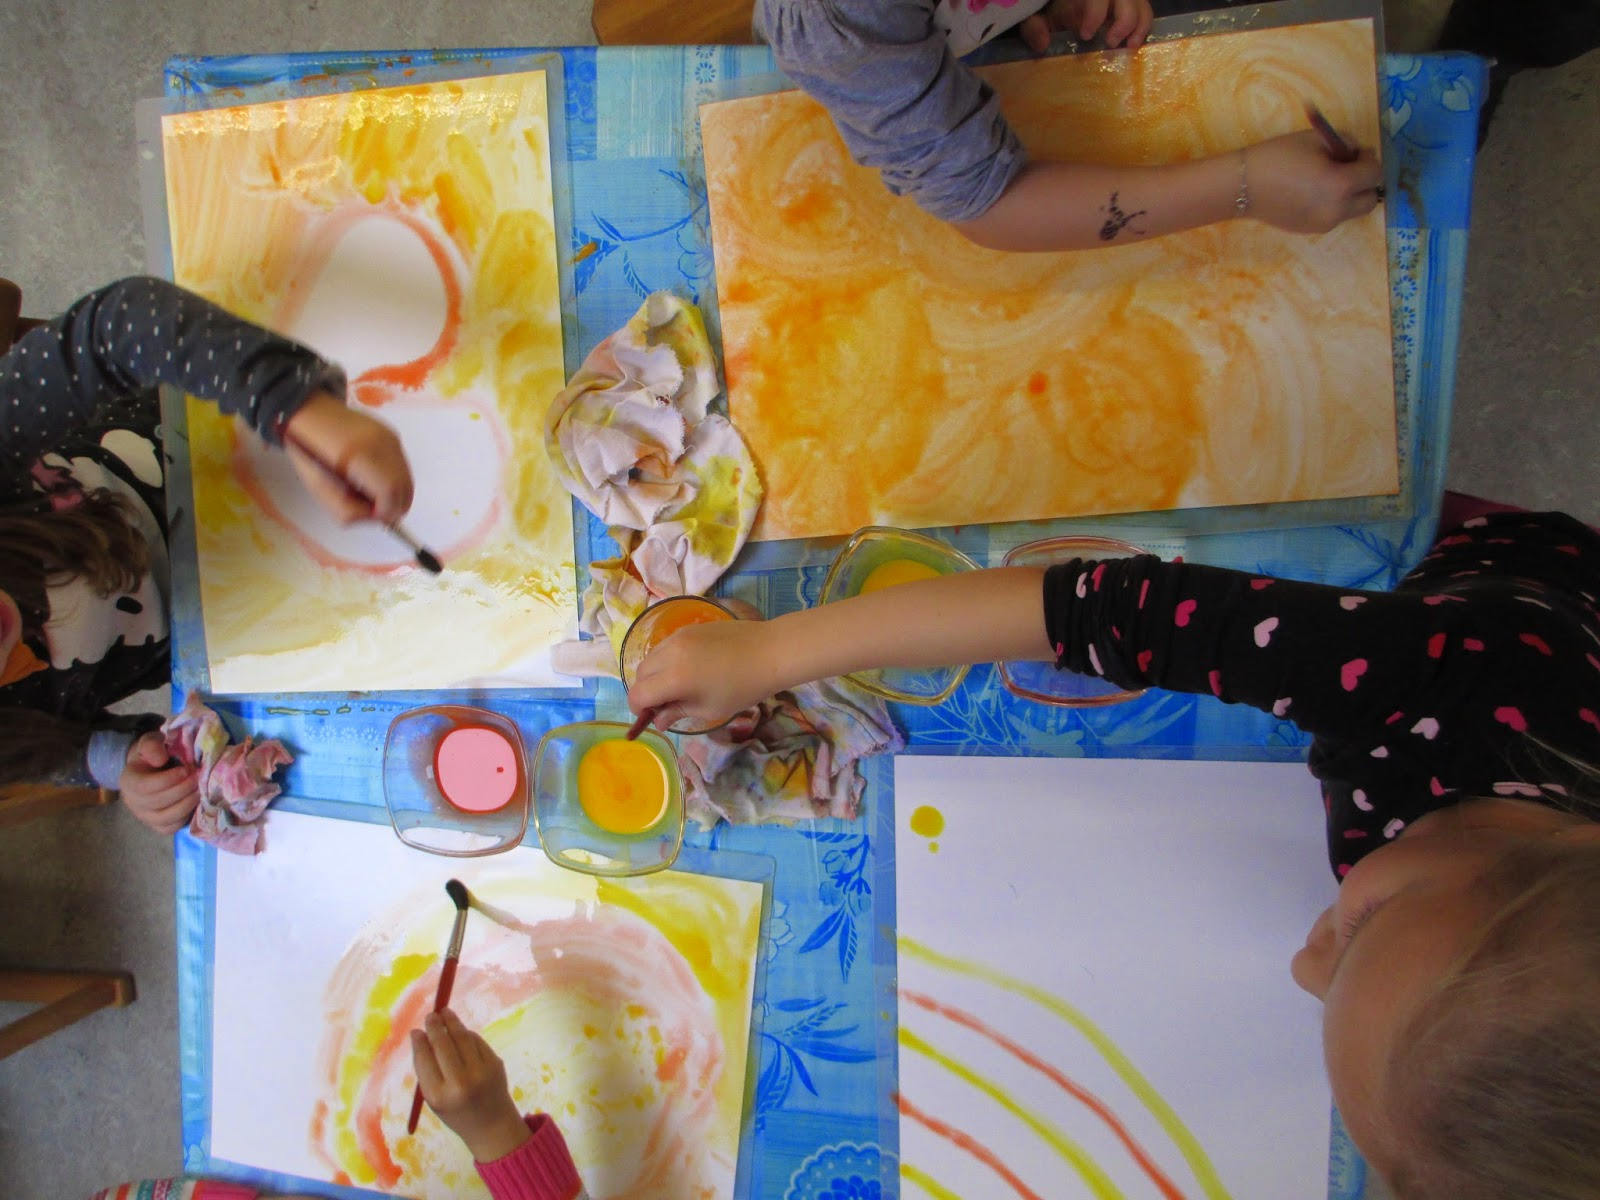 Märlimuus: Da Kommt Sonne In Den November - Aquarell Malen in Kinder Bilder Selber Malen